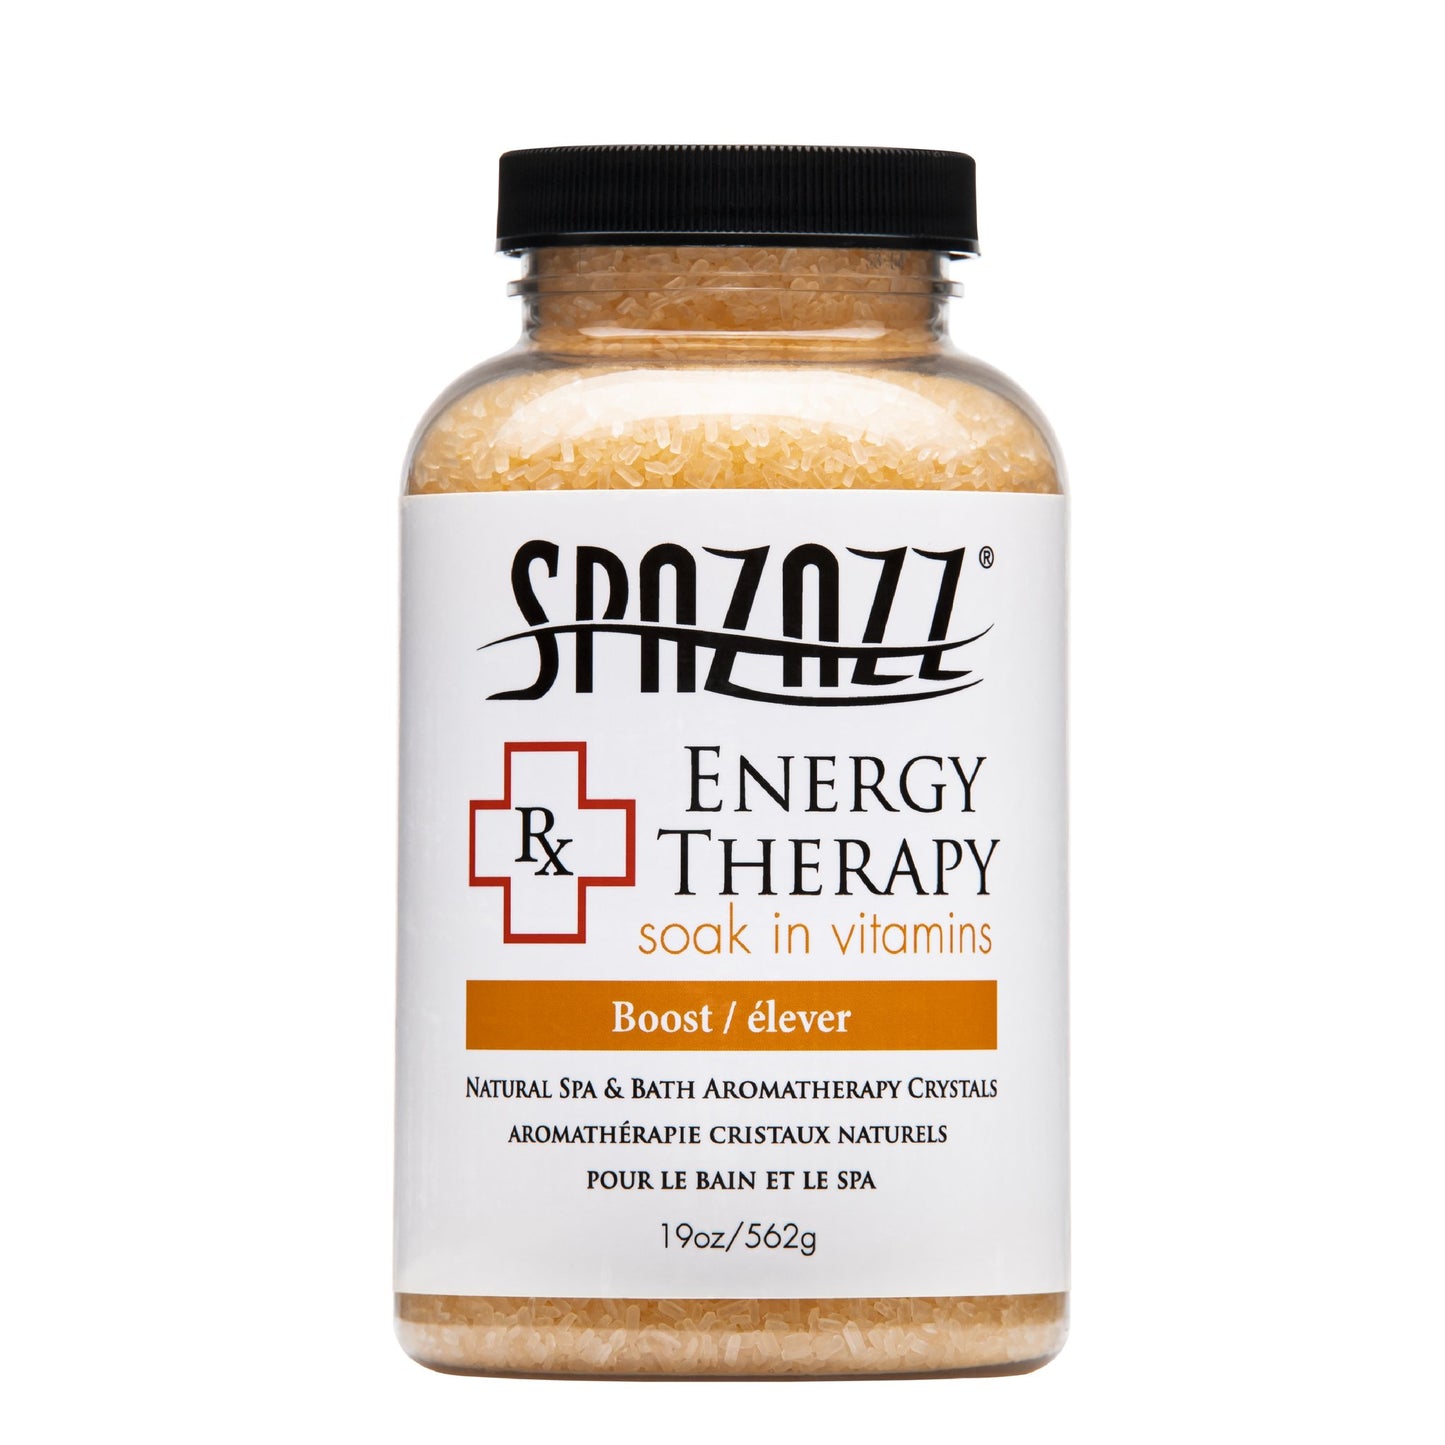 Spazazz Therapy 19oz